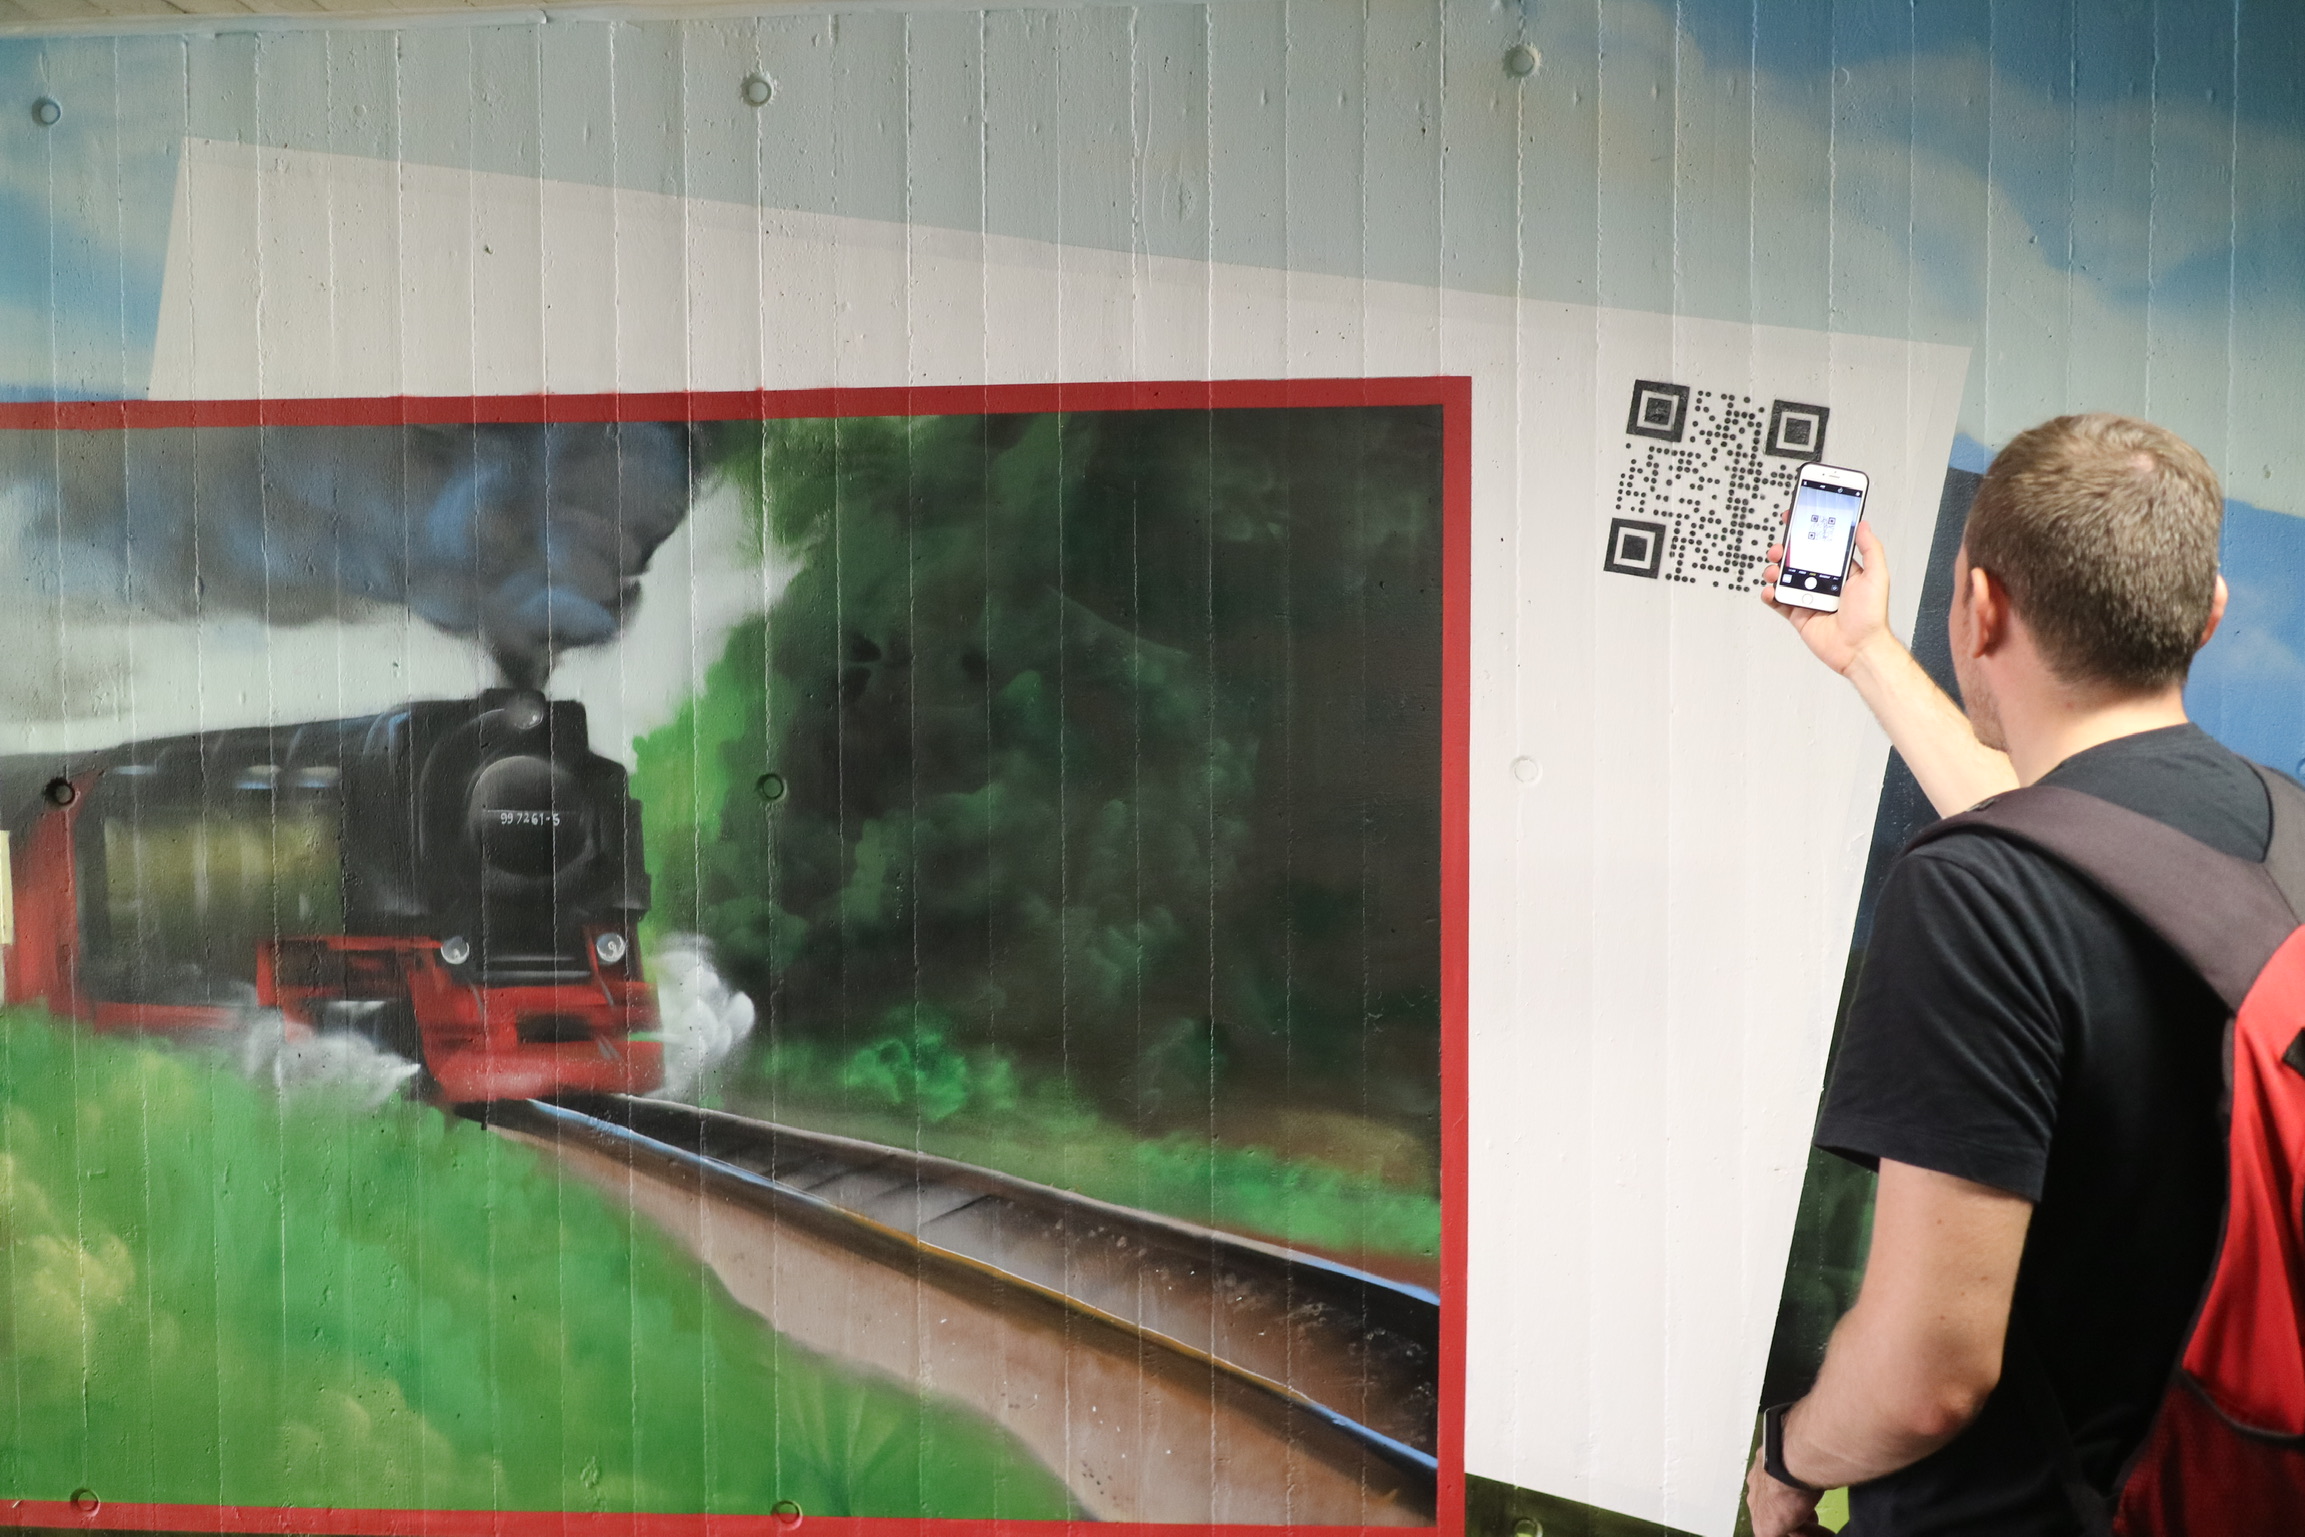 Schöner ankommen in Wernigerode: Graffiti-Kunst und digitale Touristeninformation am Zukunftsbahnhof